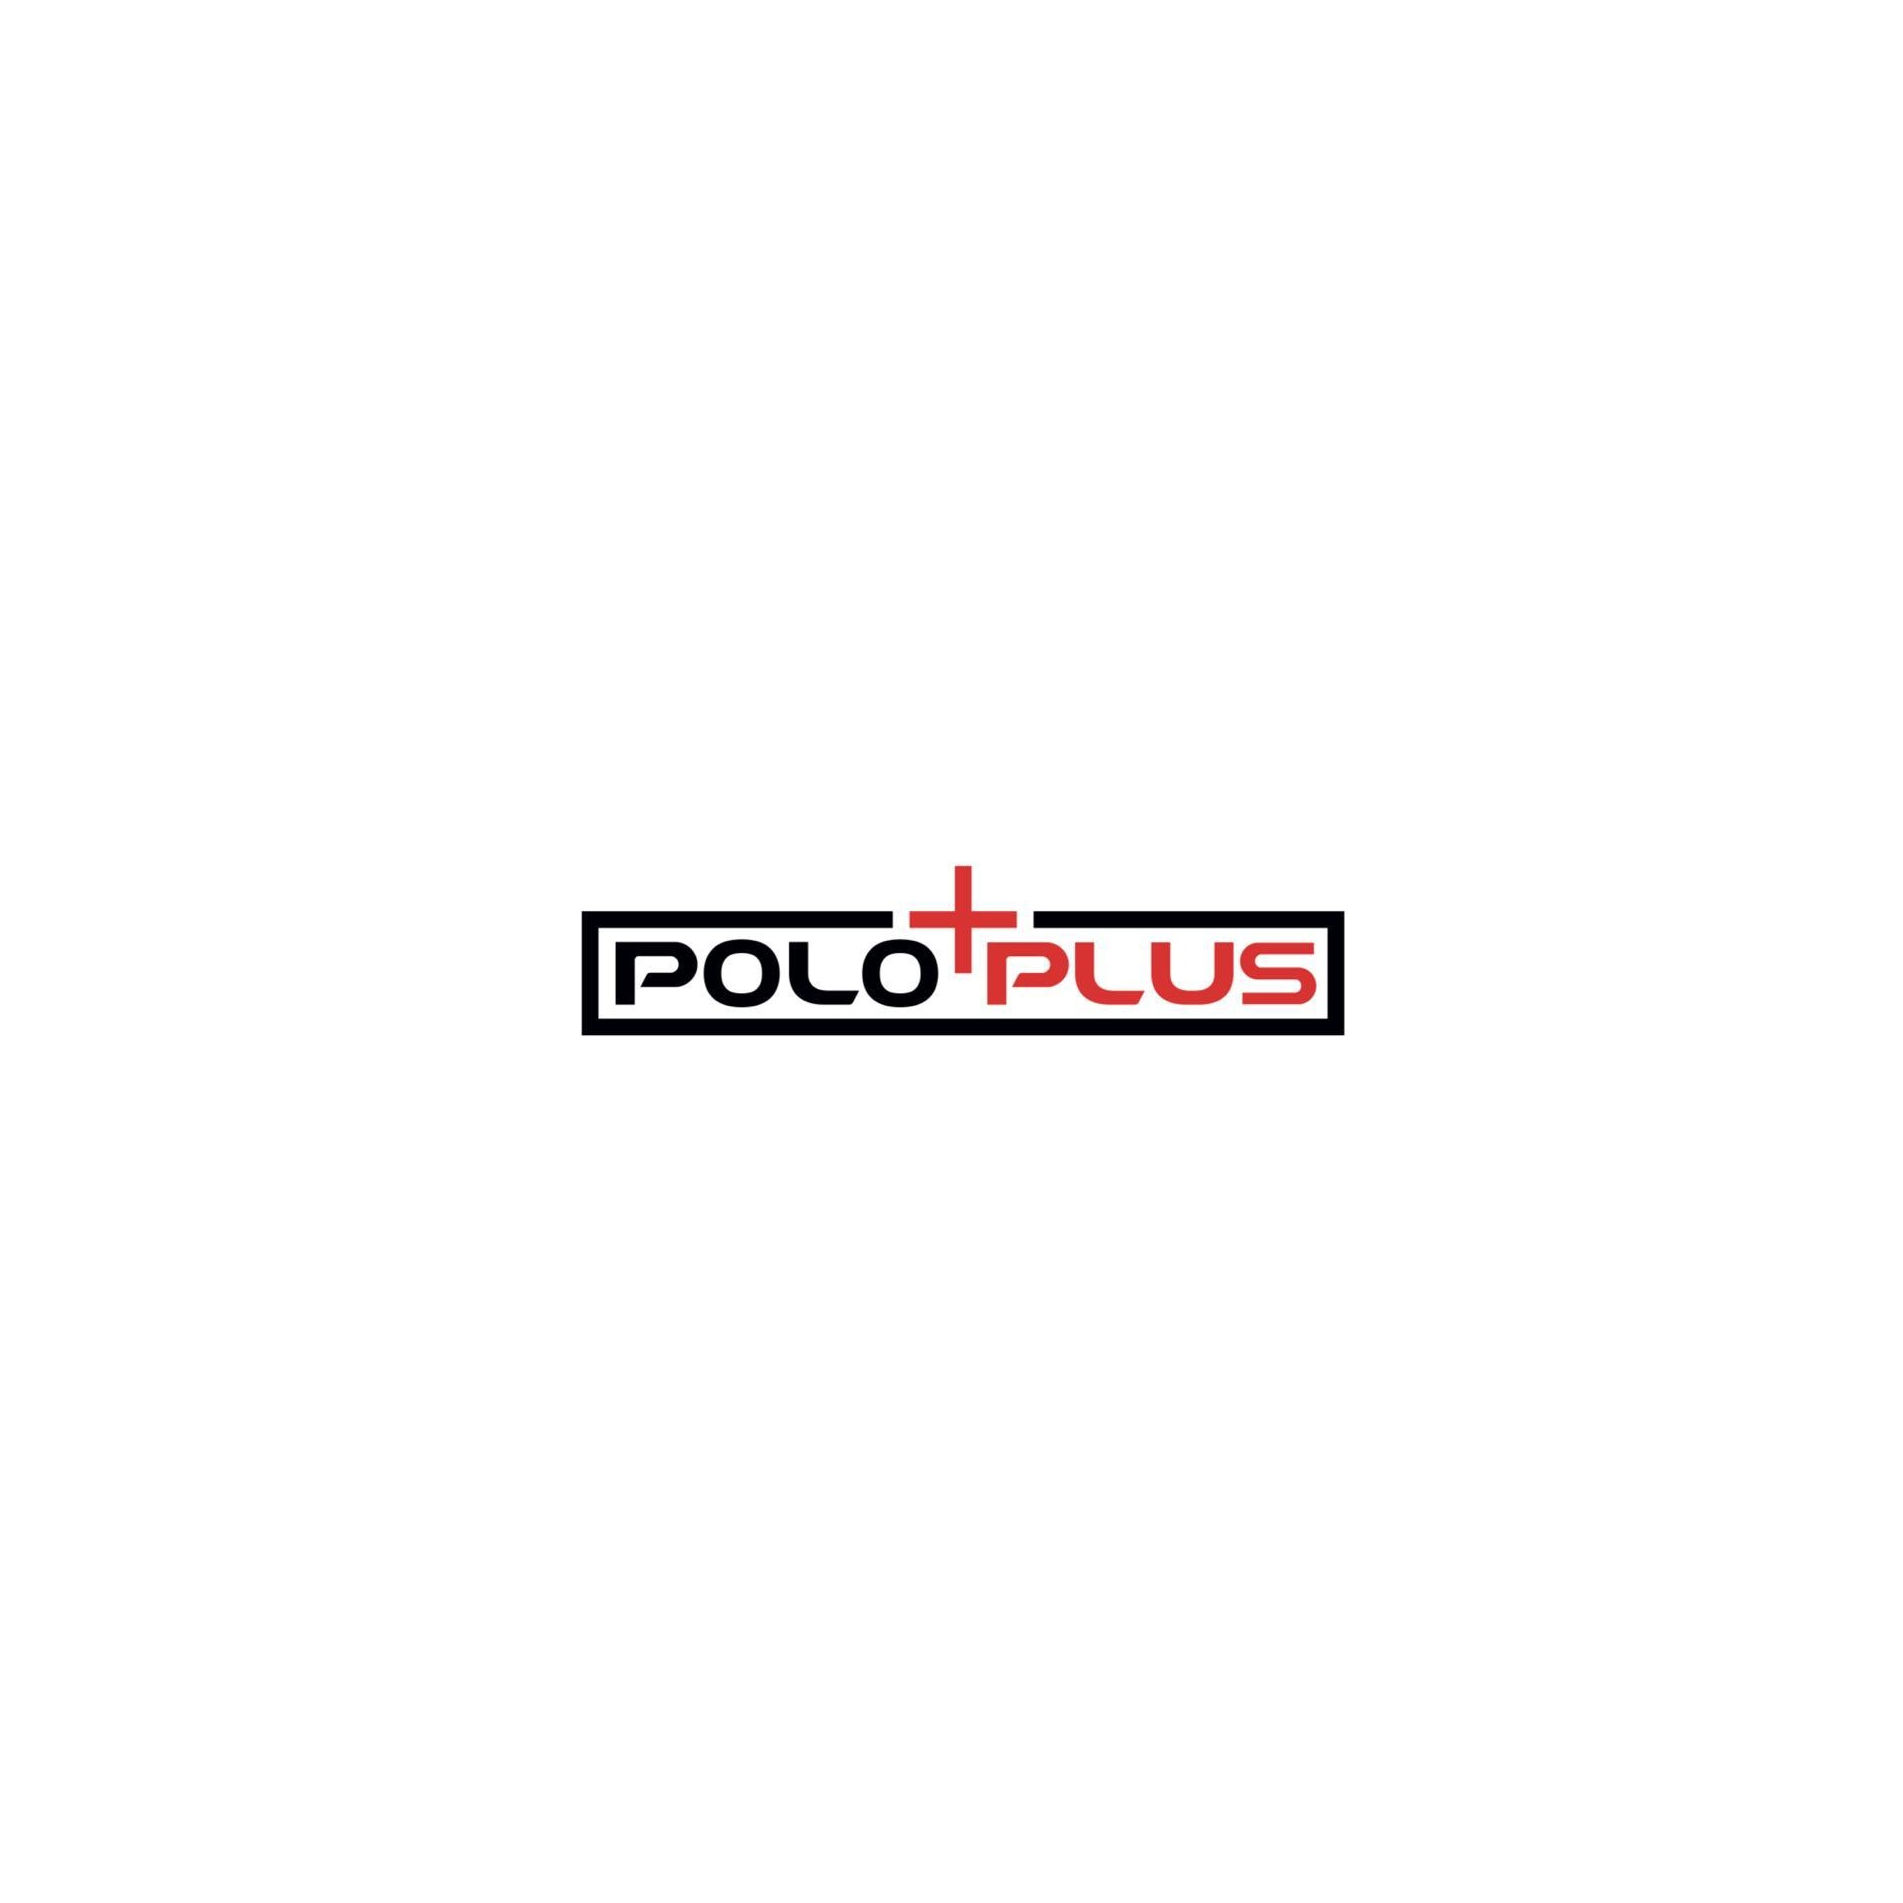 Polo Plus Amblem büyük.jpg